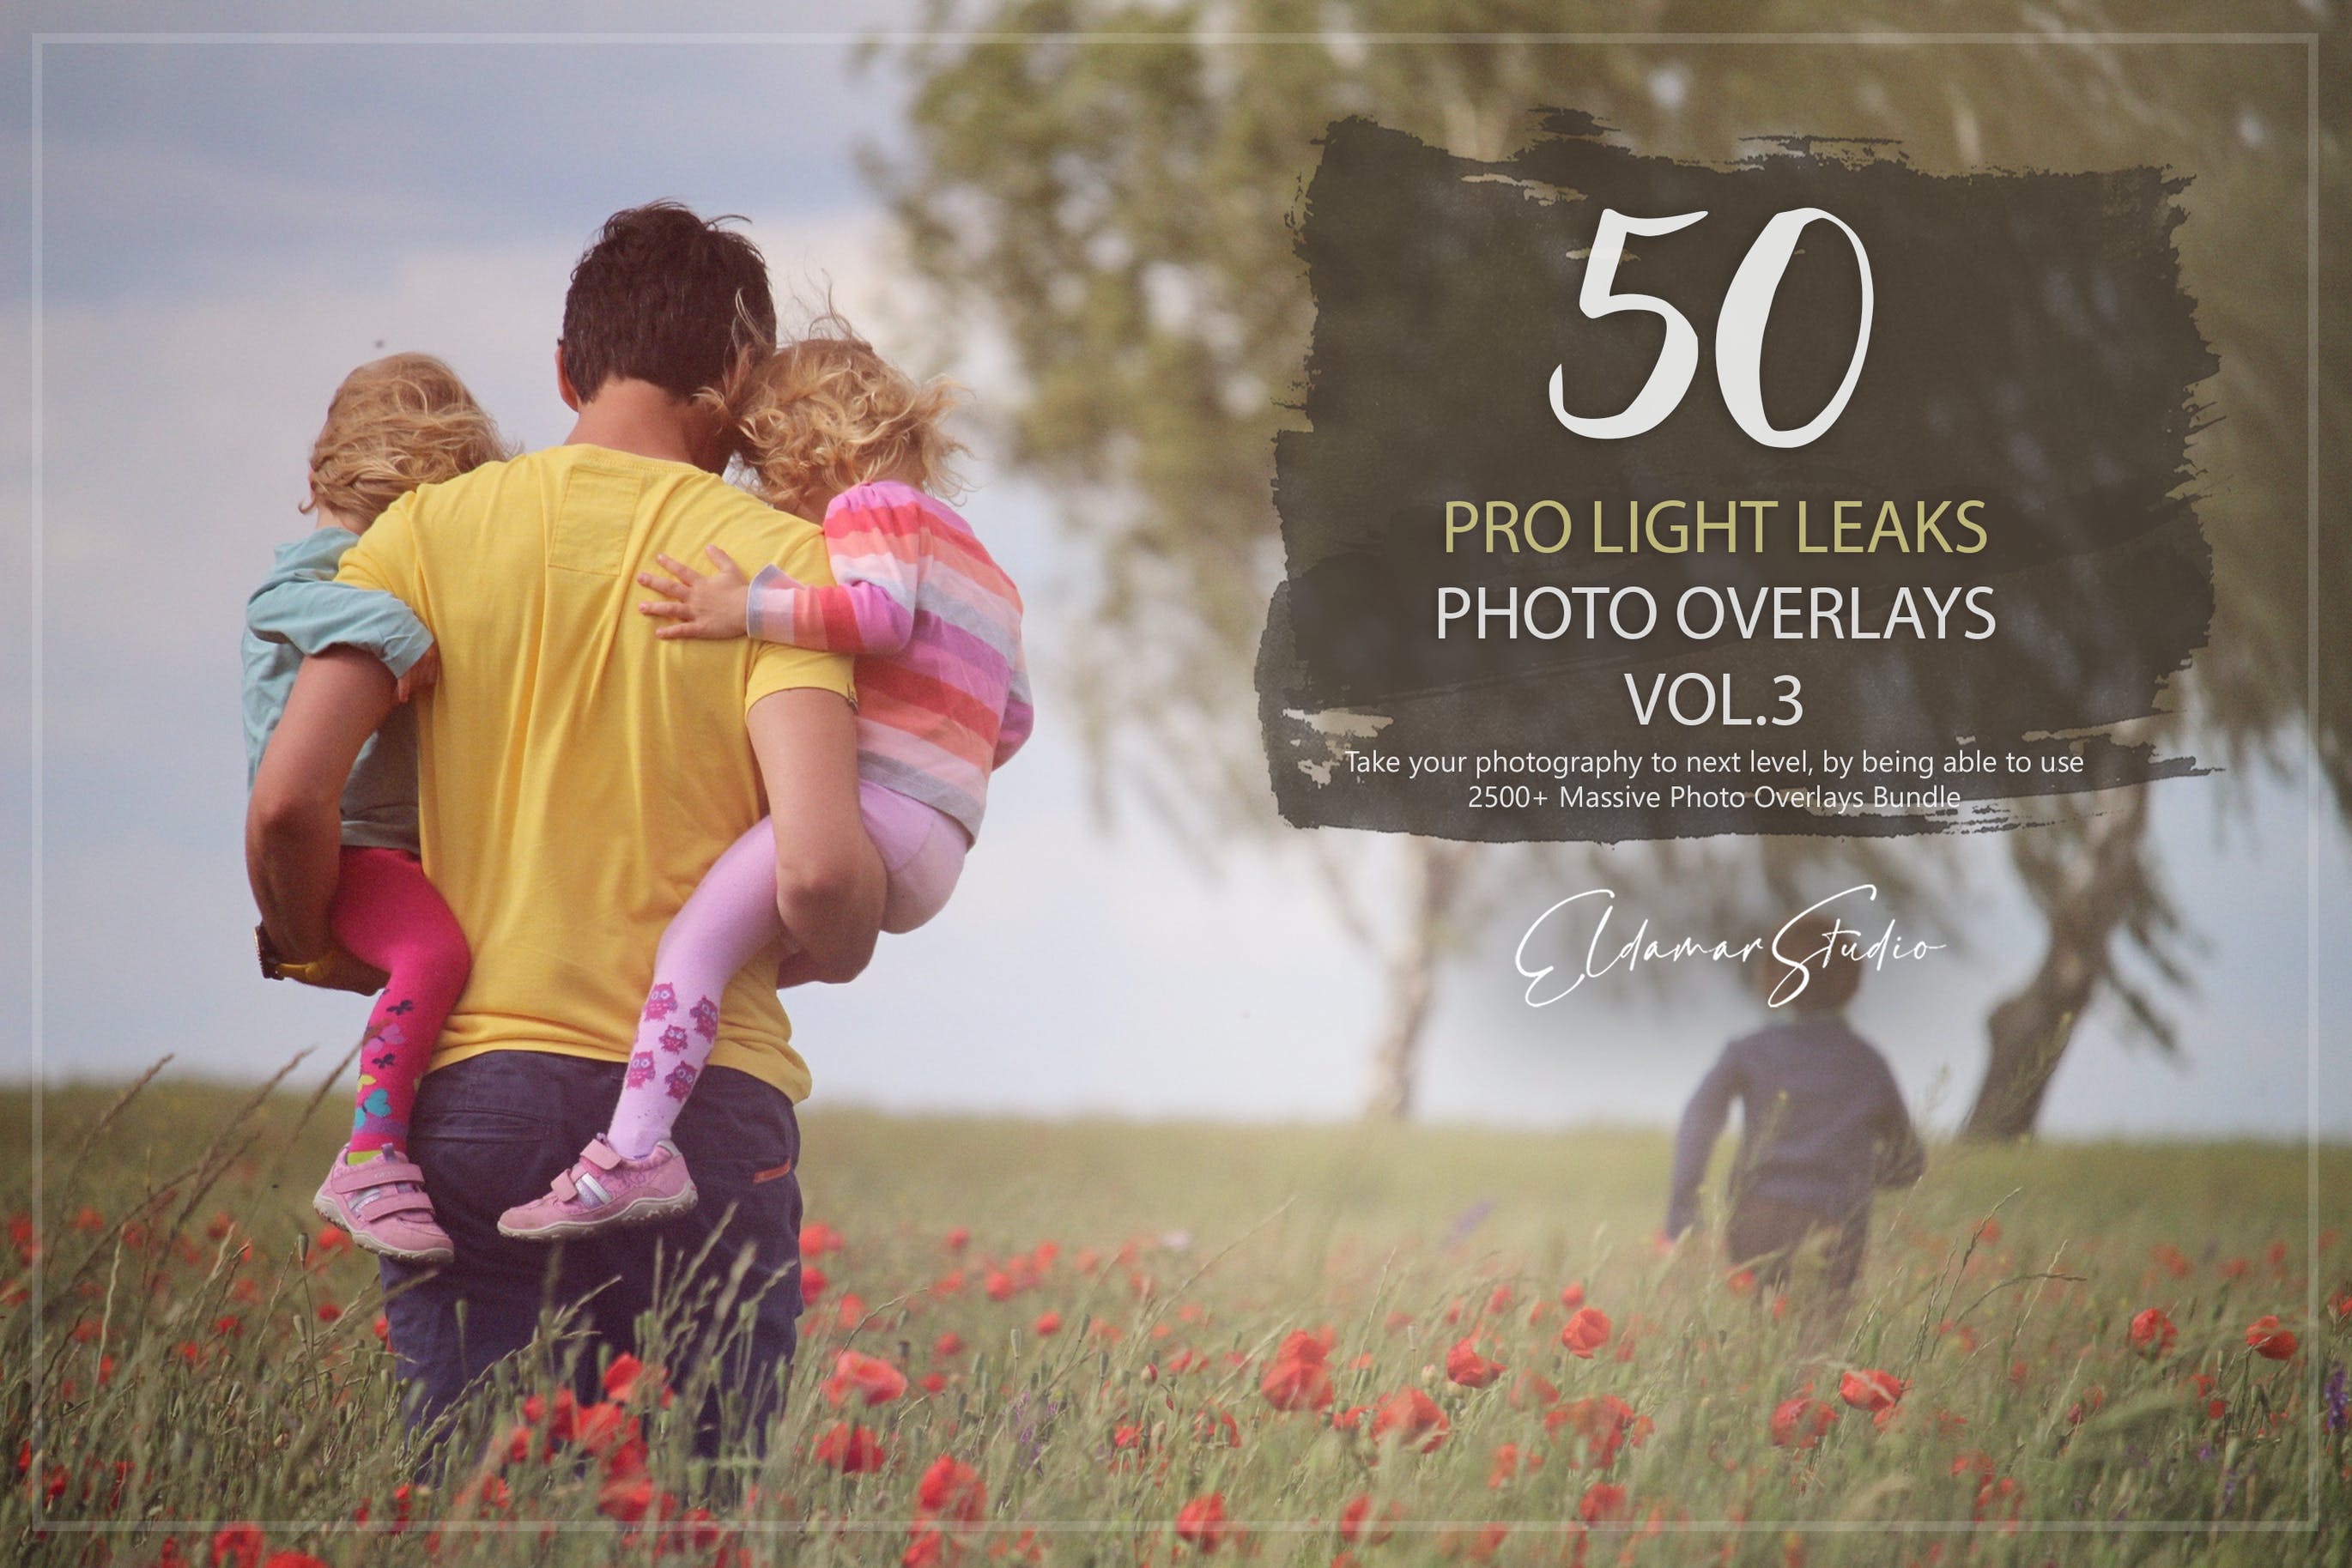 50个专业漏光效果照片叠层背景素材v3 50 Pro Light Leaks Photo Overlays – Vol. 3 图片素材 第1张